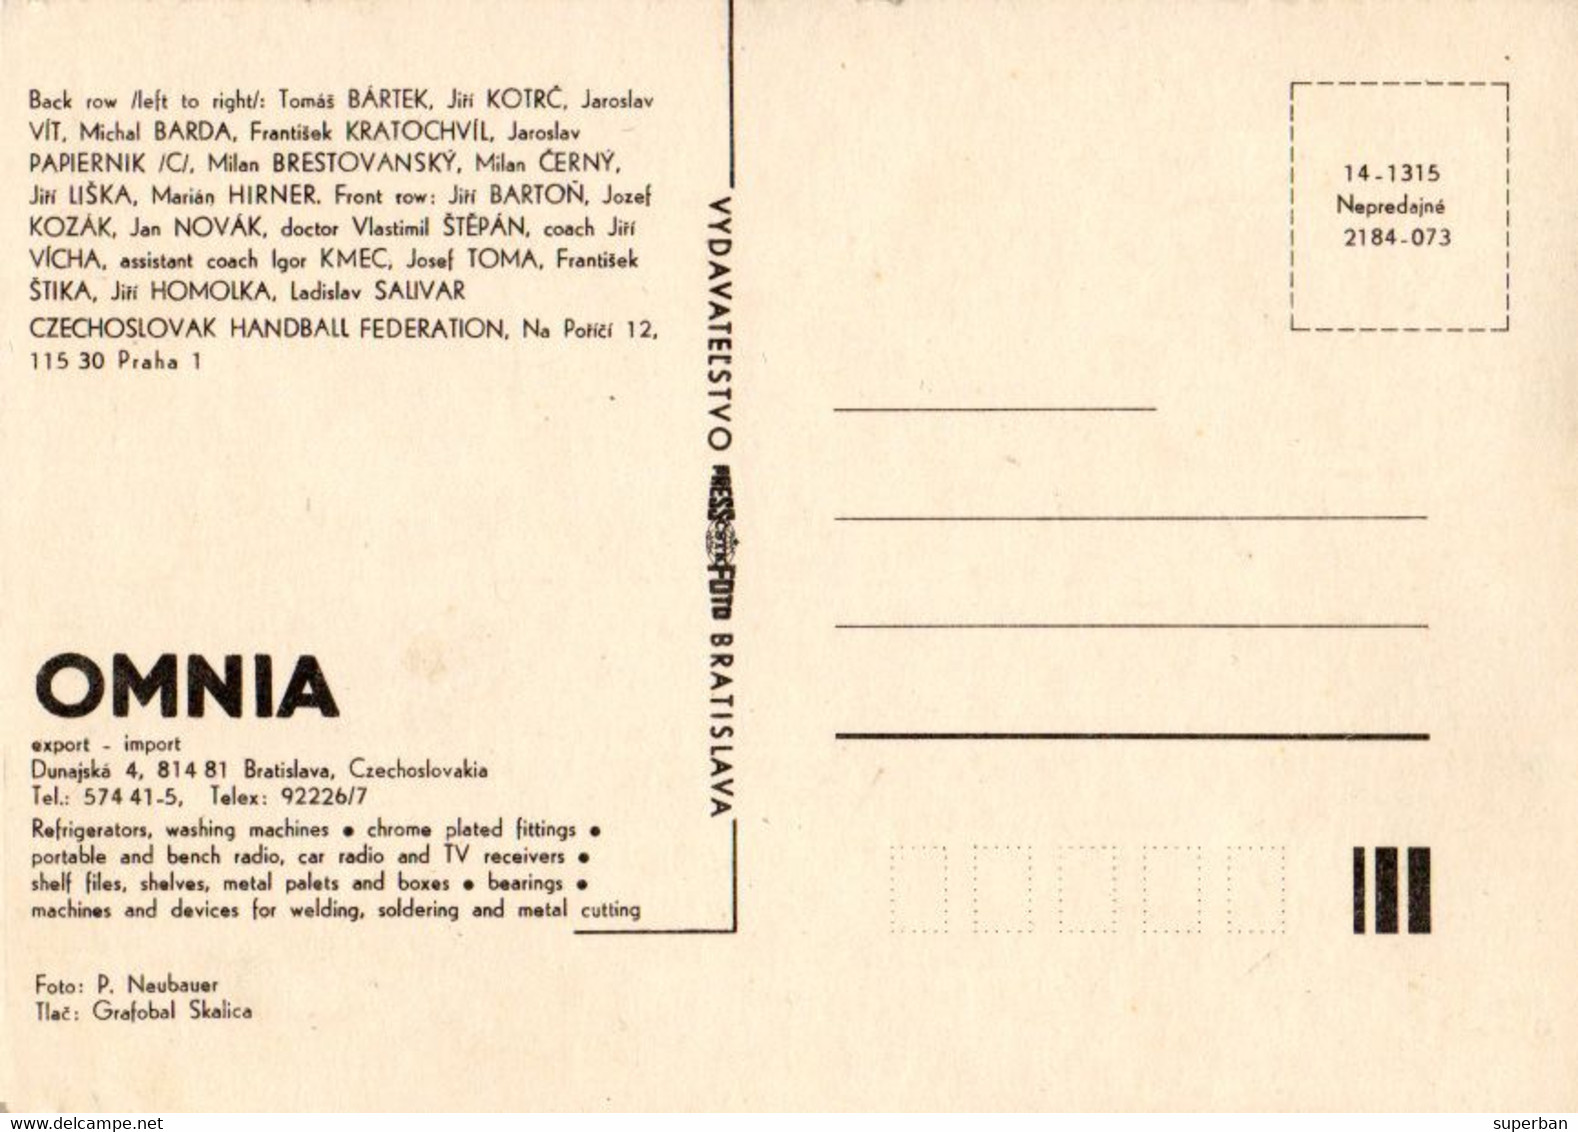 CZECHOSLOVAK HANDBALL OLYMPIC TEAM - 1984 / ÉQUIPE OLYMPIQUE DE HANDBALL De TCHÉCOSLOVAQUIE - 1984 - RRR ! (ak151) - Handball